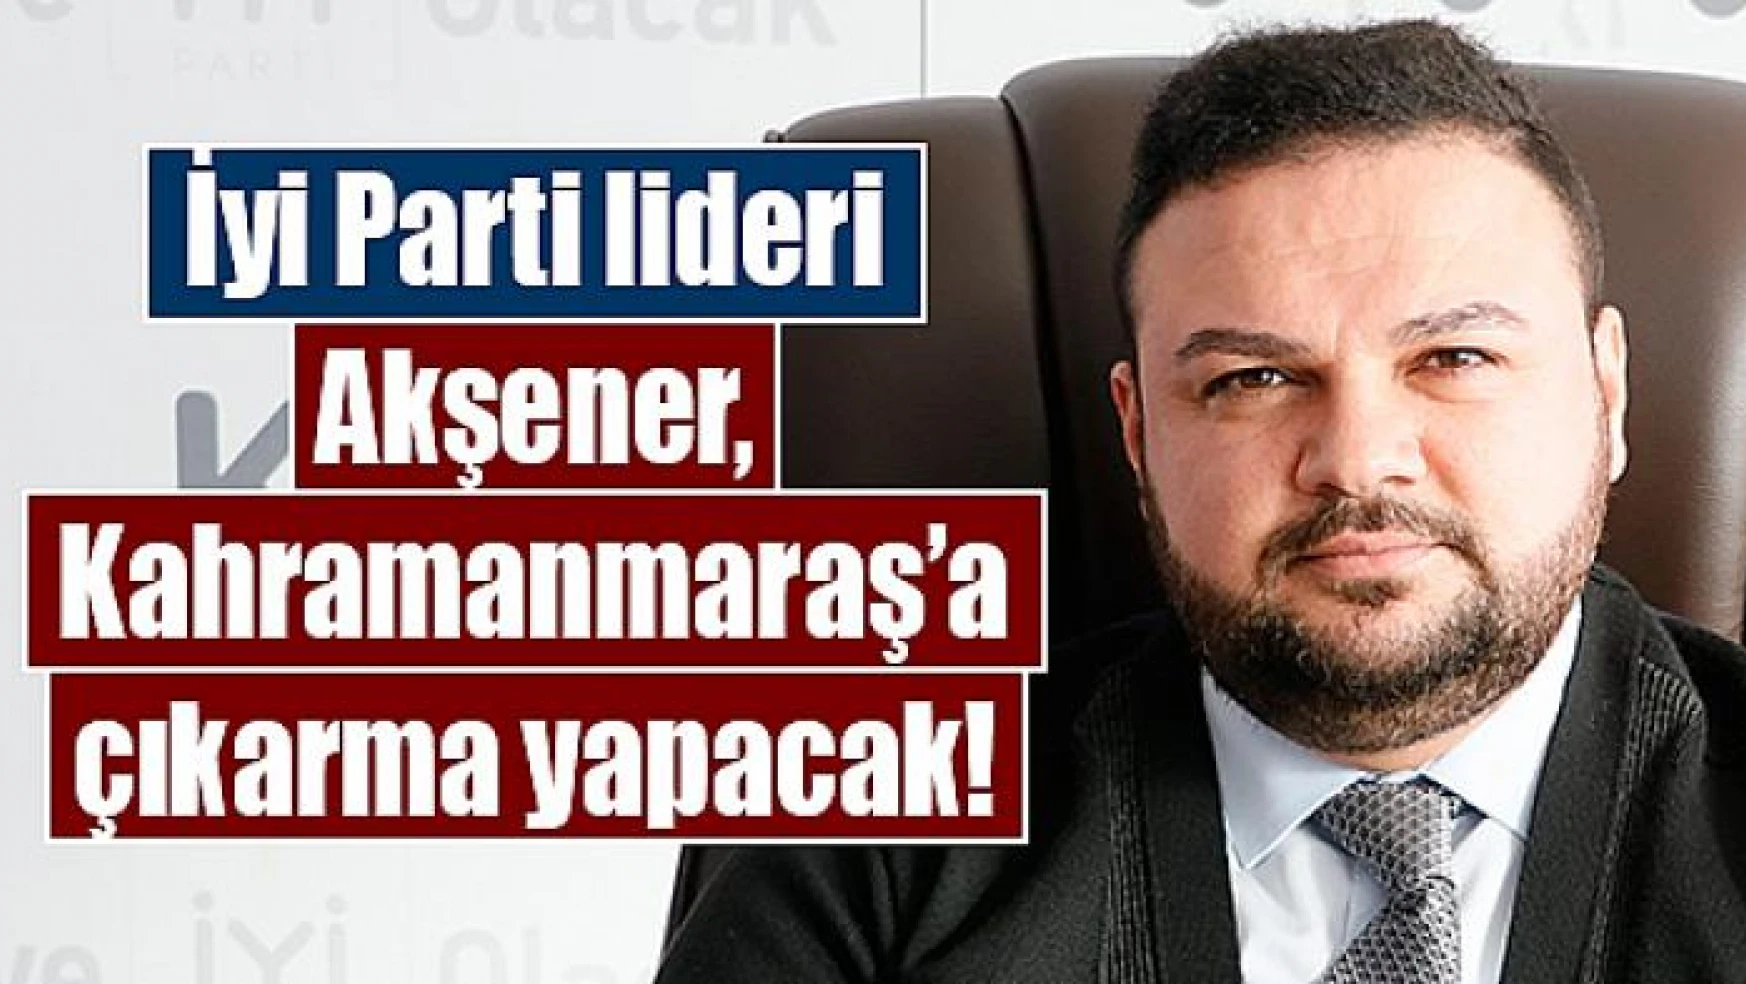 İyi Parti lideri Akşener, Kahramanmaraş'a çıkarma yapacak!